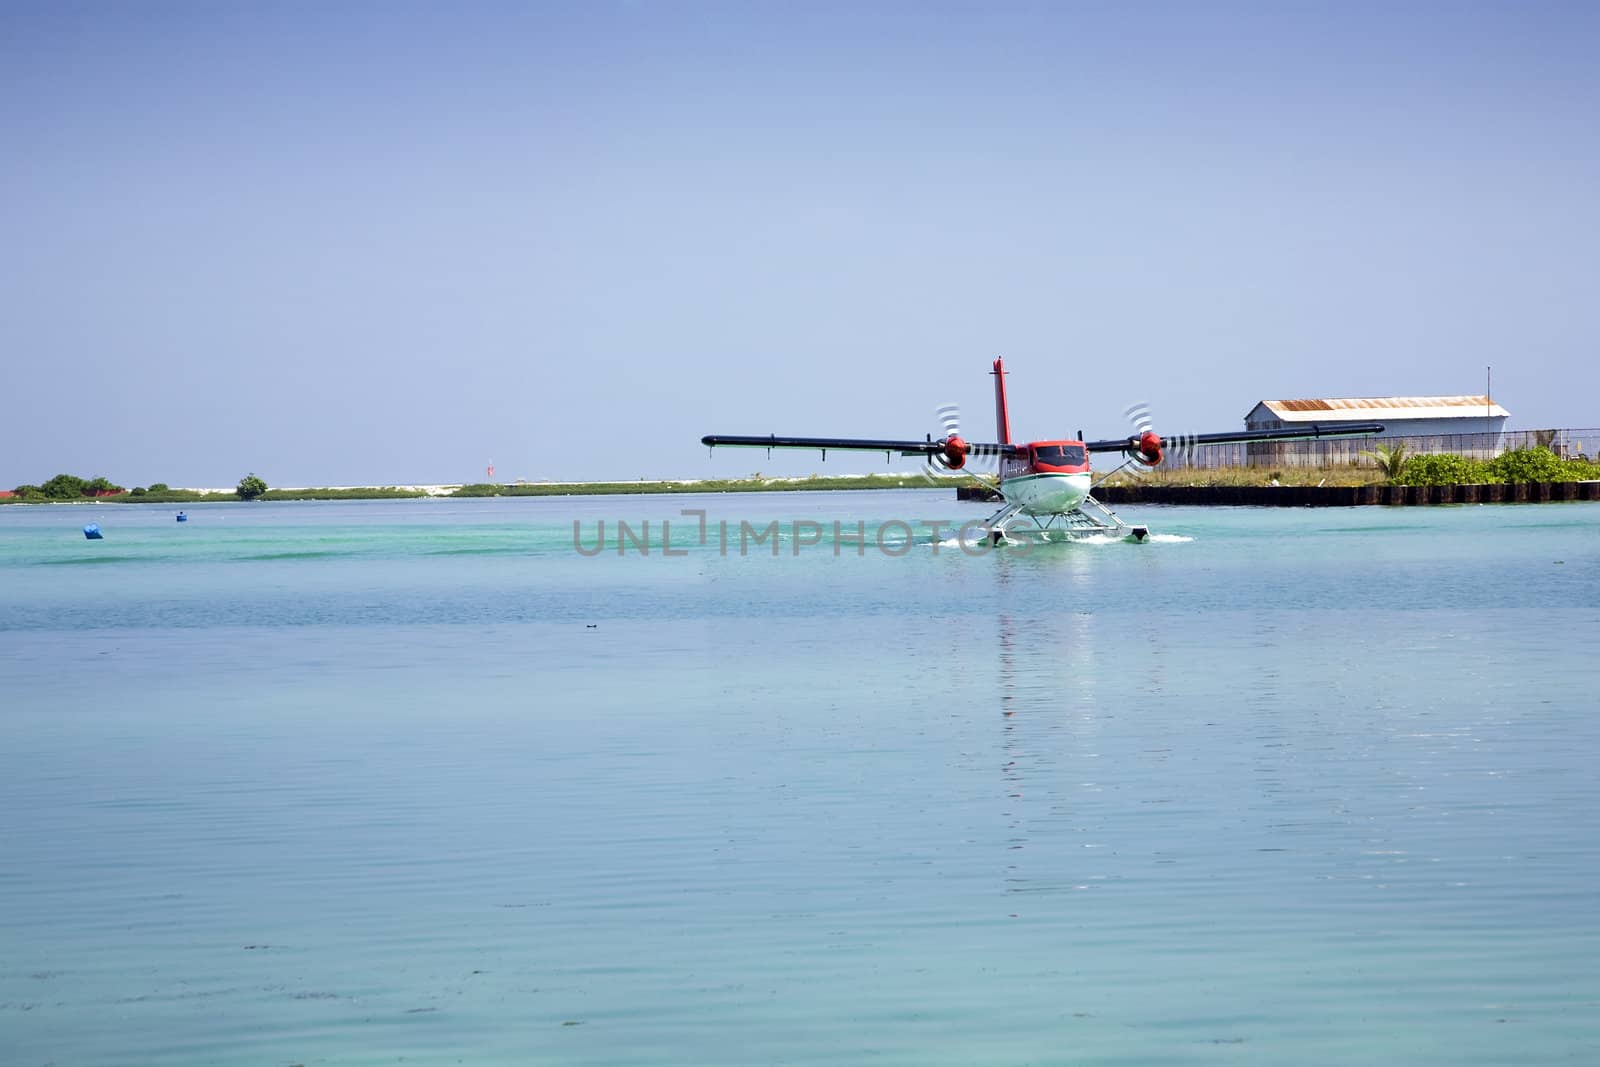 Sea planes in the Maldives